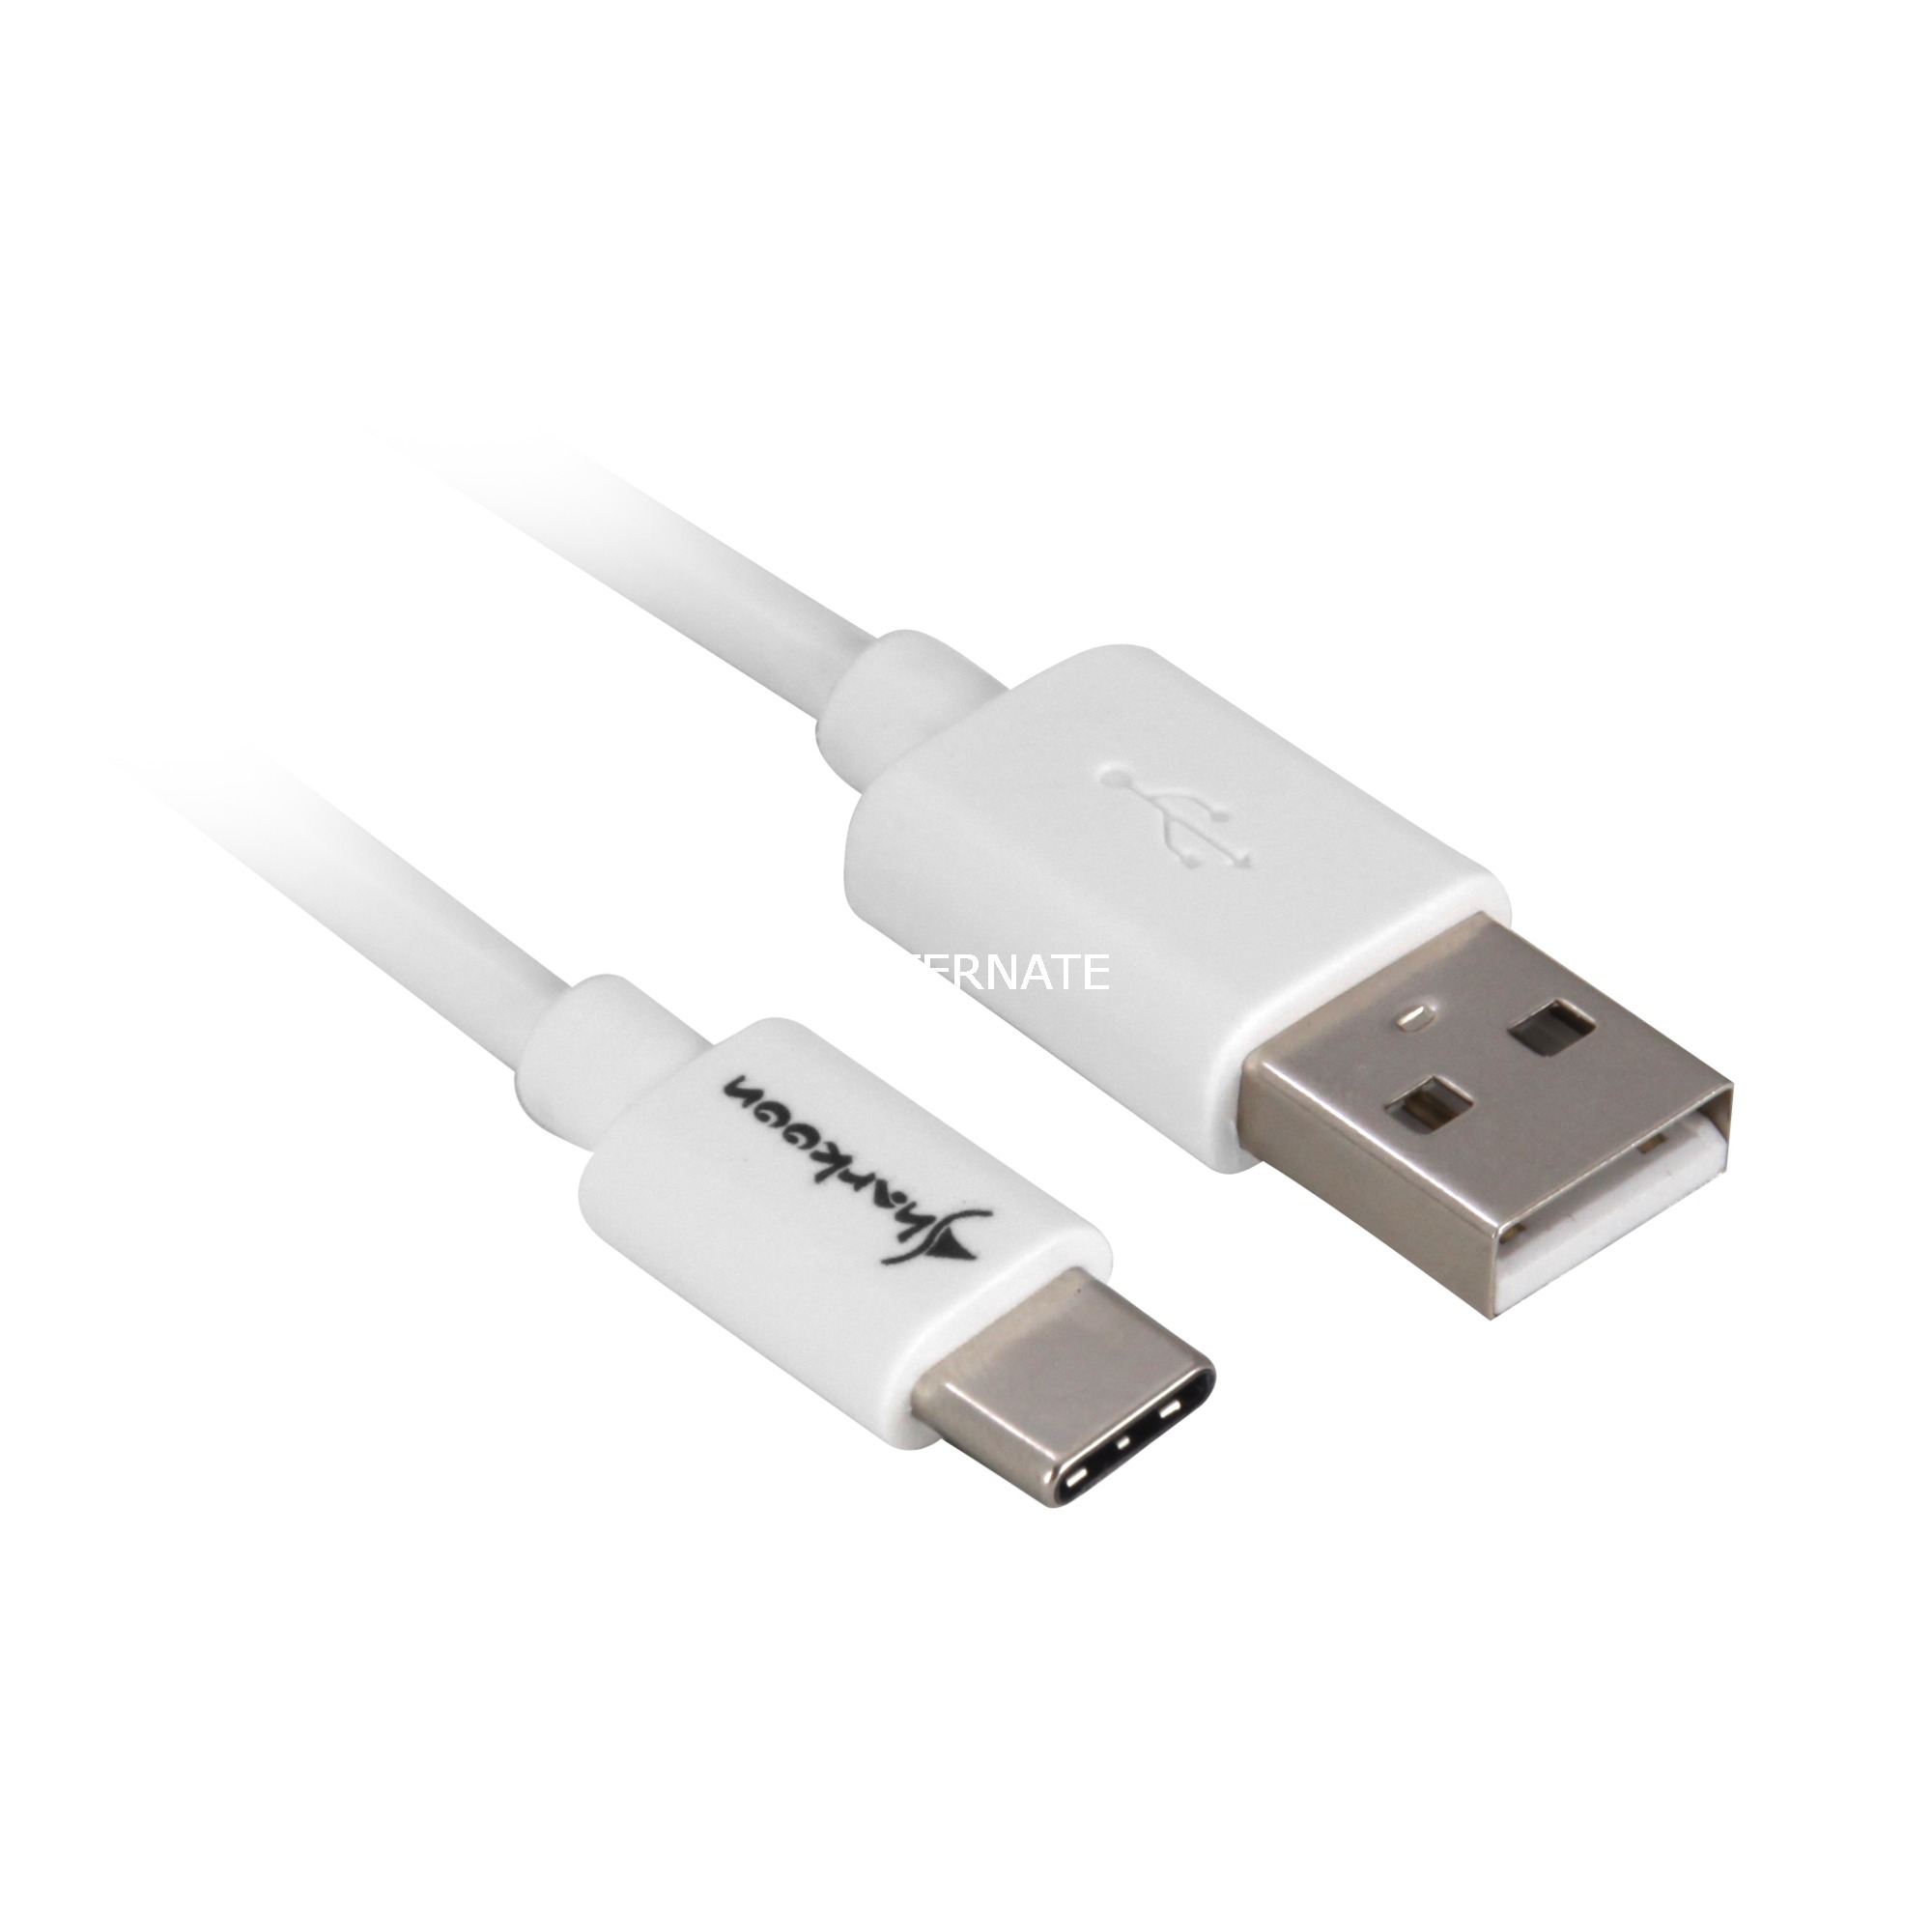 Image of Alternate - Kabel USB-A 2.0 (Stecker) > USB-C (Stecker) online einkaufen bei Alternate